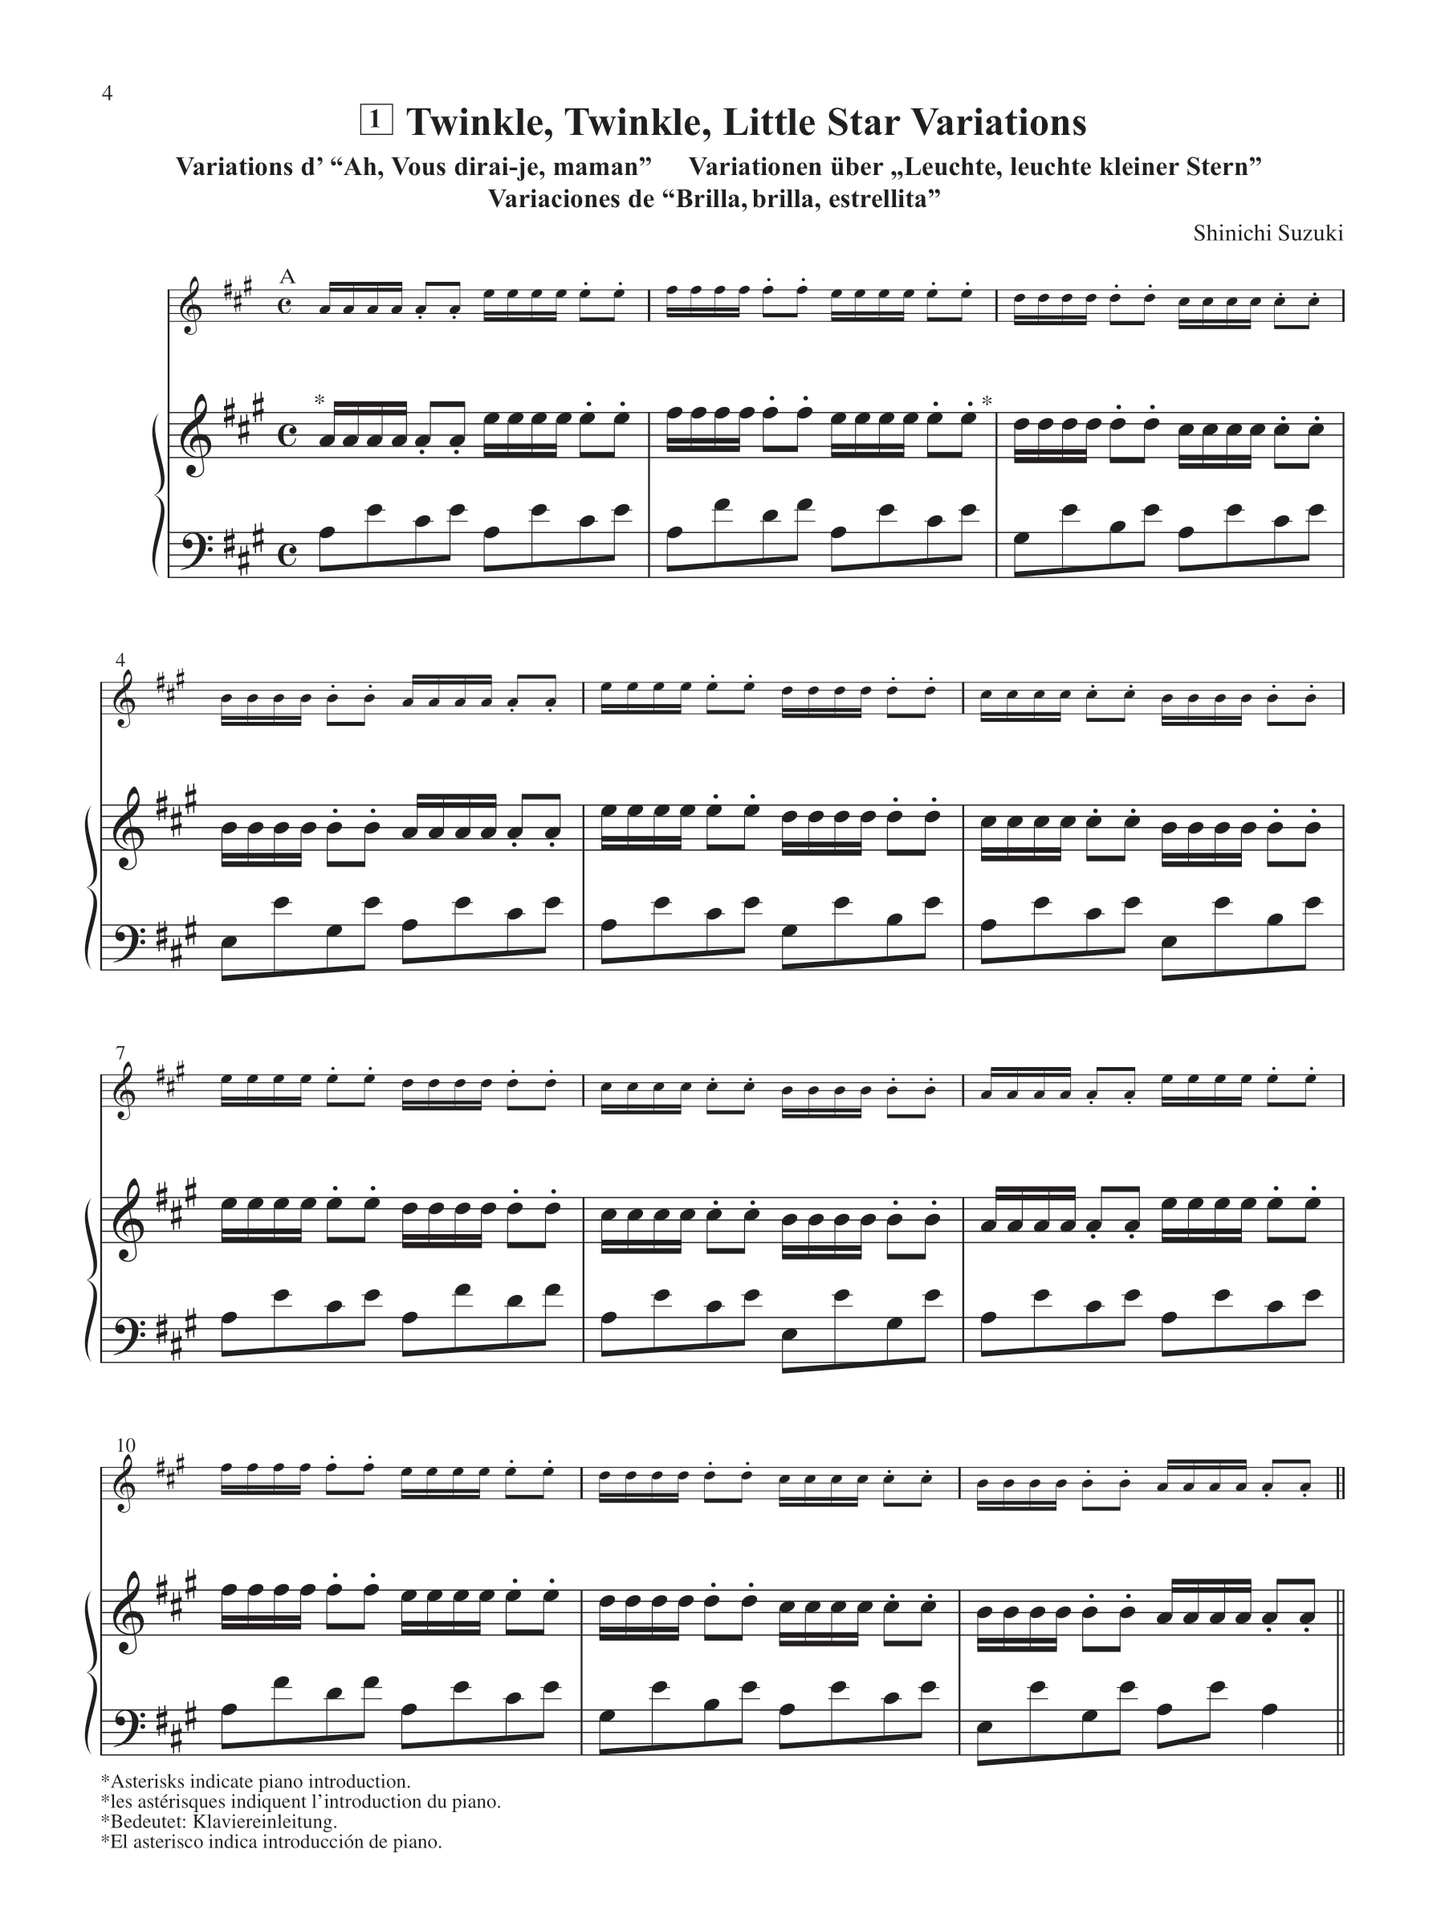 Suzuki Violin School - Volume 1 Piano Accompaniment Book